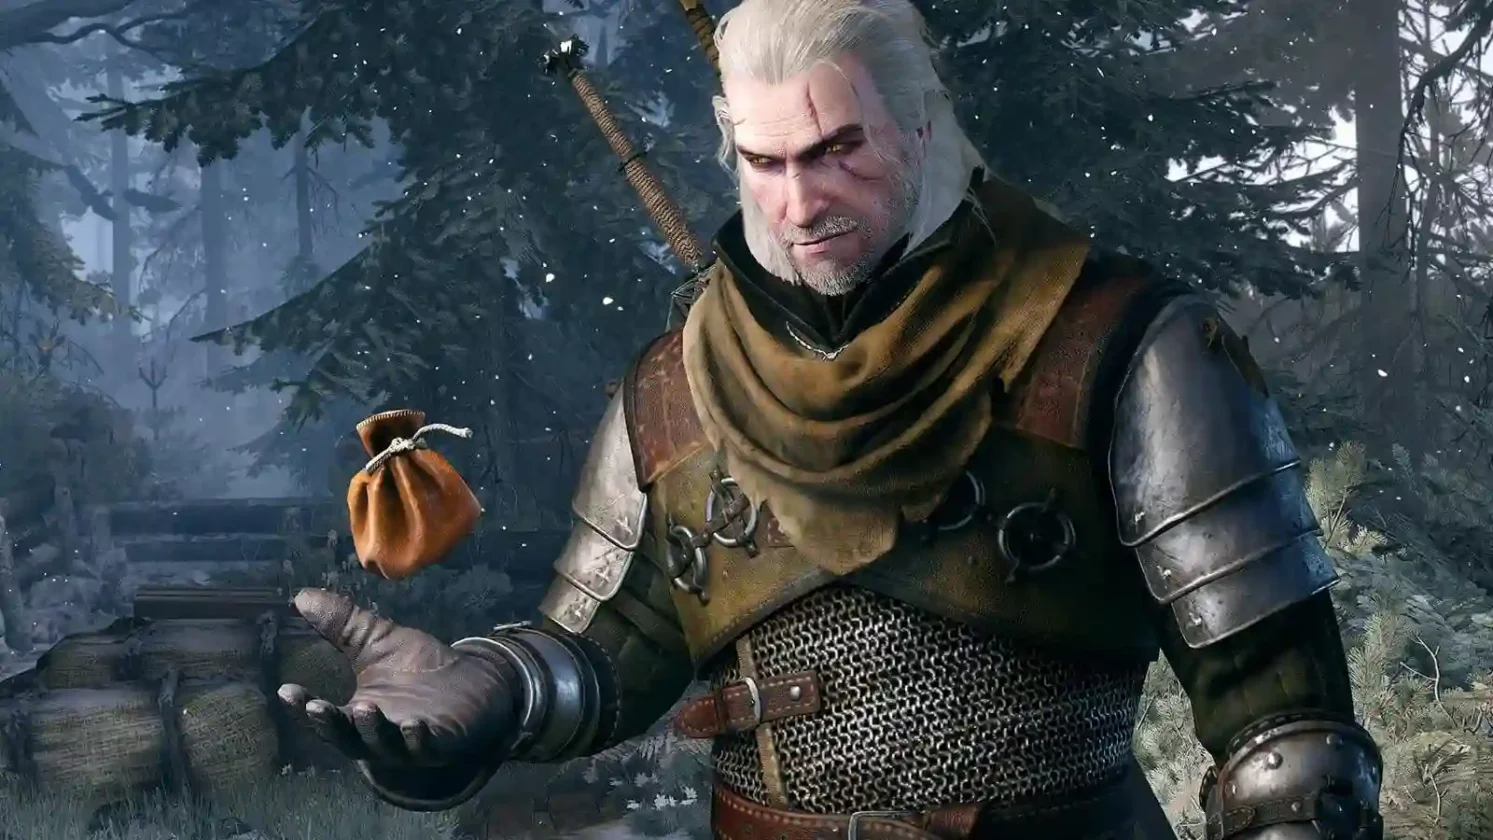 Aprovecha al máximo las habilidades de Geralt en Witcher 3 Wild Hunt